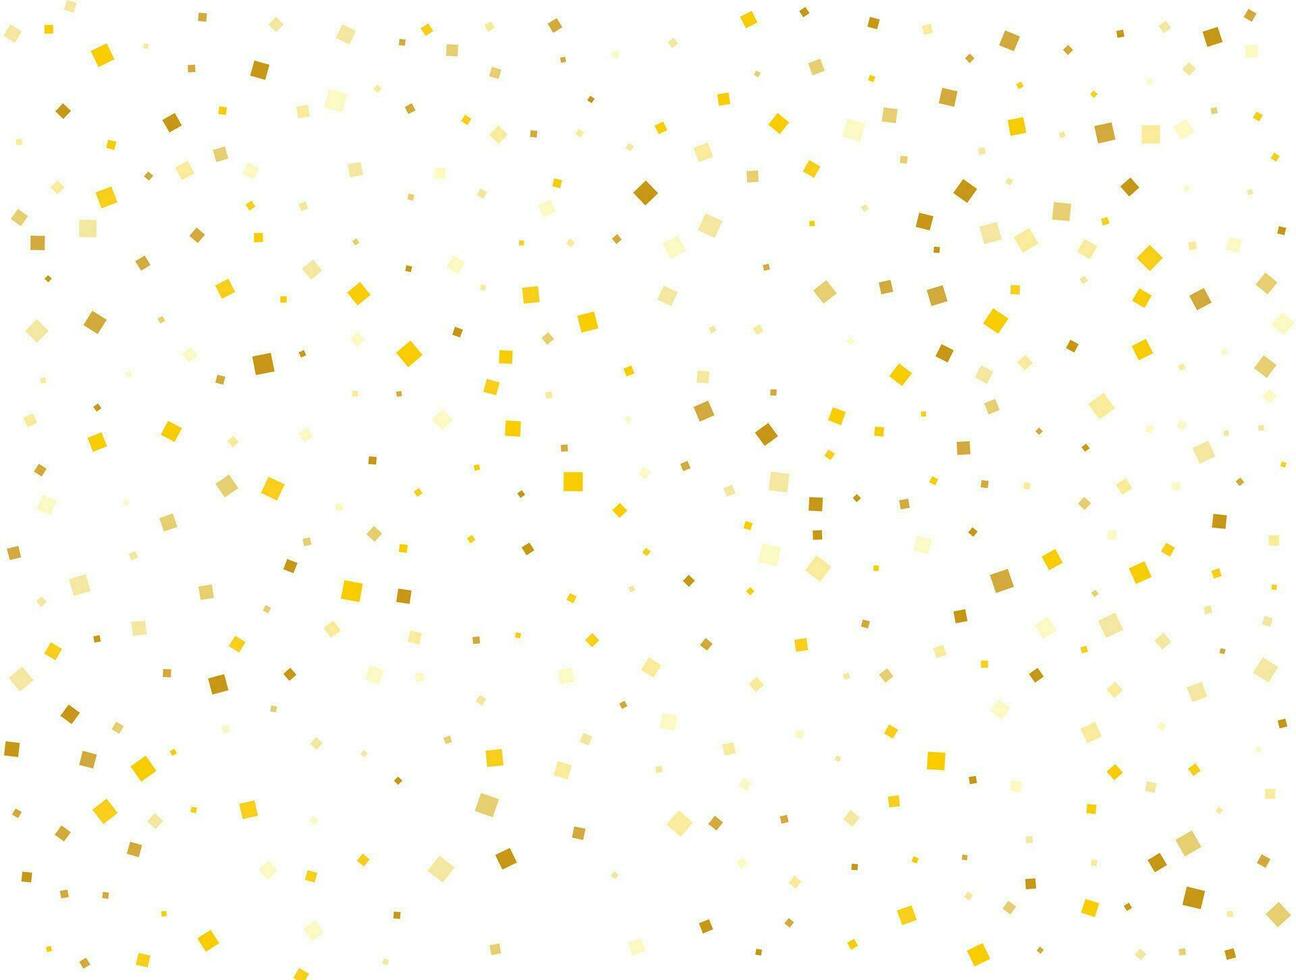 mariage d'or carré confettis. vecteur illustration